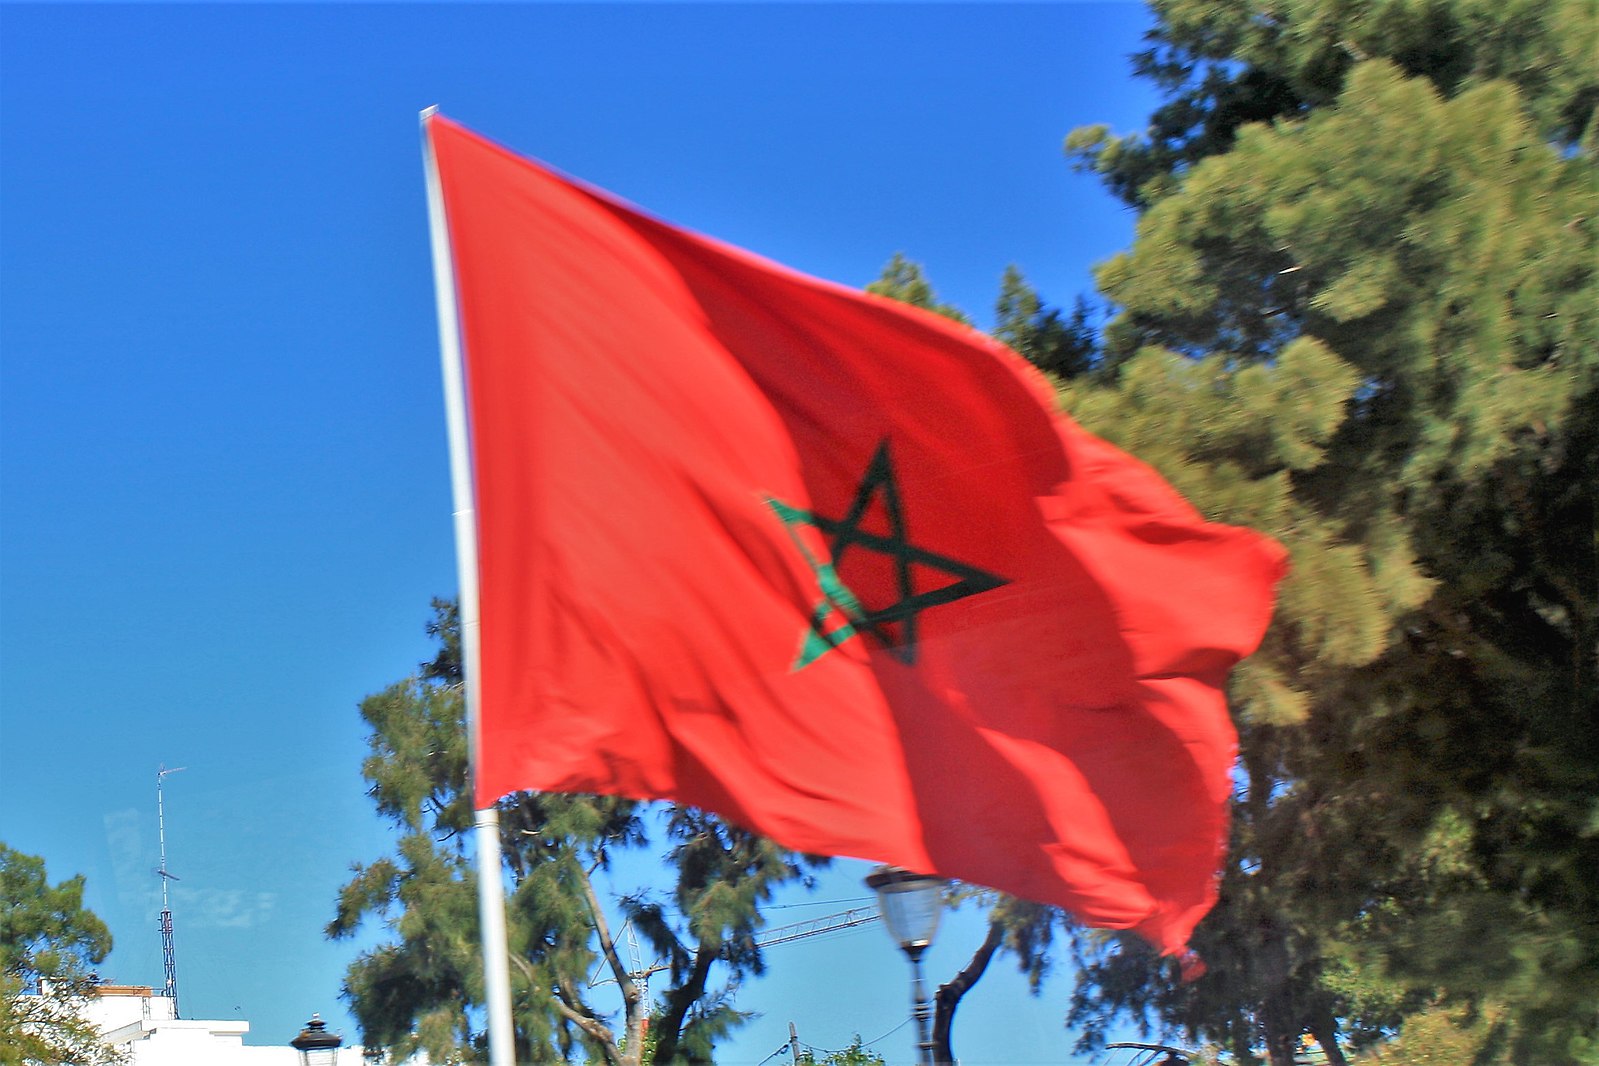 انتخاب المغرب بأديس أبابا نائبا لرئيس المكتب التنفيذي للجنة الإقليمية الإفريقية لمبادرة الأمم المتحدة حول تدبير المعلومات الجيومكانية